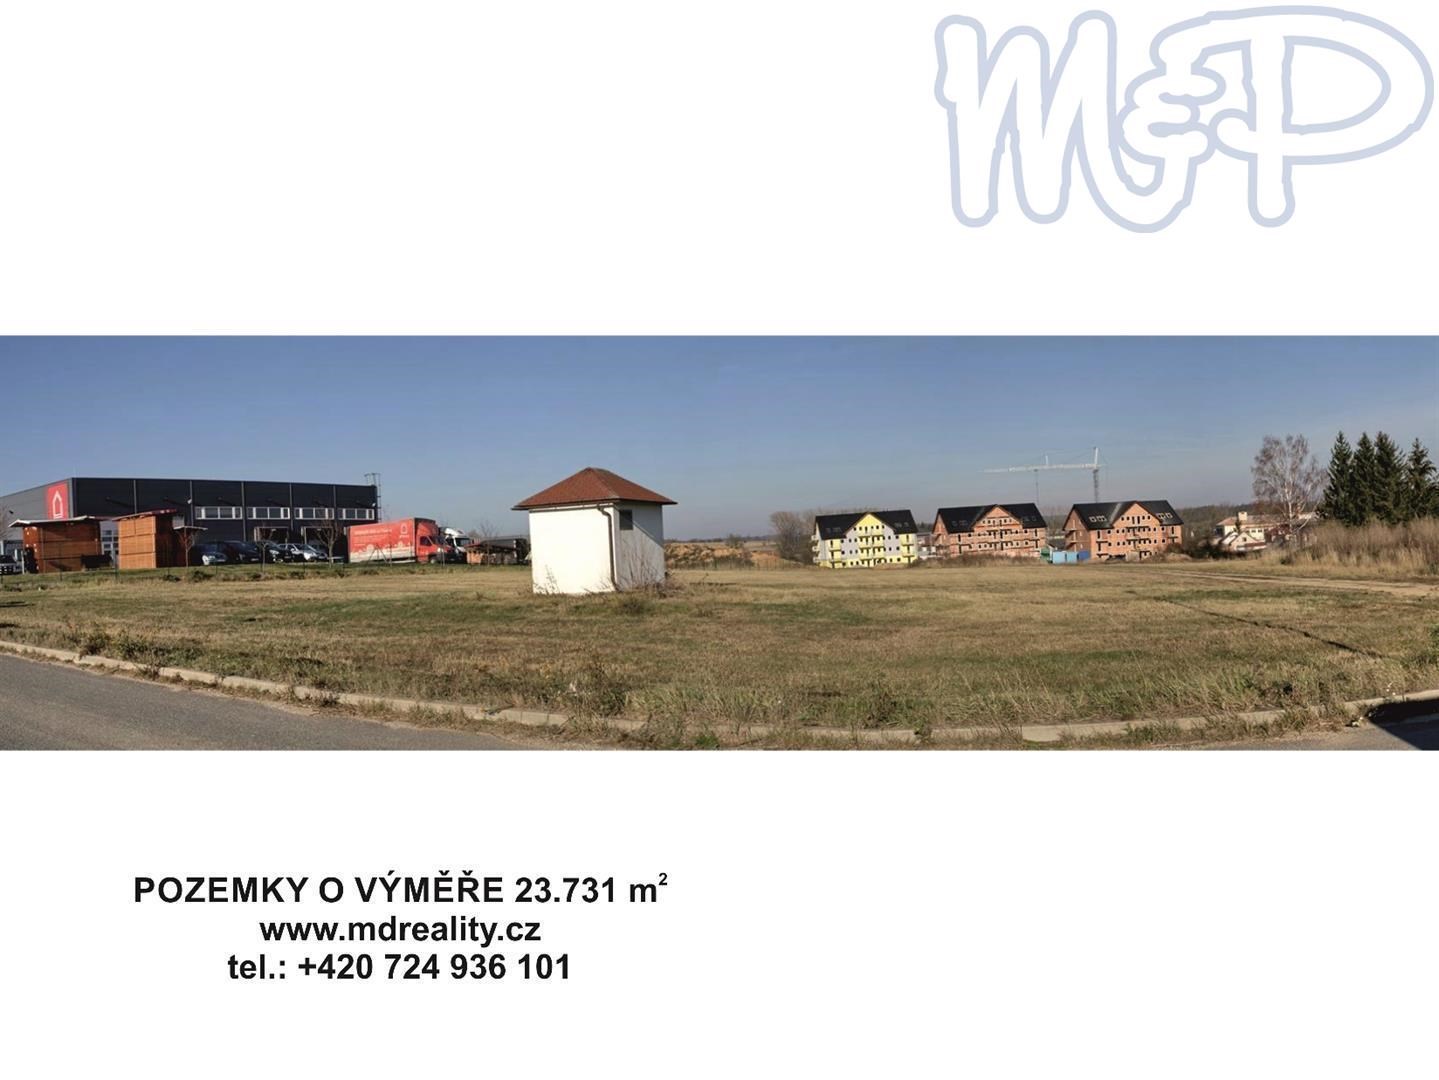 Stavební pozemky v průmyslové zóně města Polná (ŠIROKOÚHLÝ SNÍMEK)